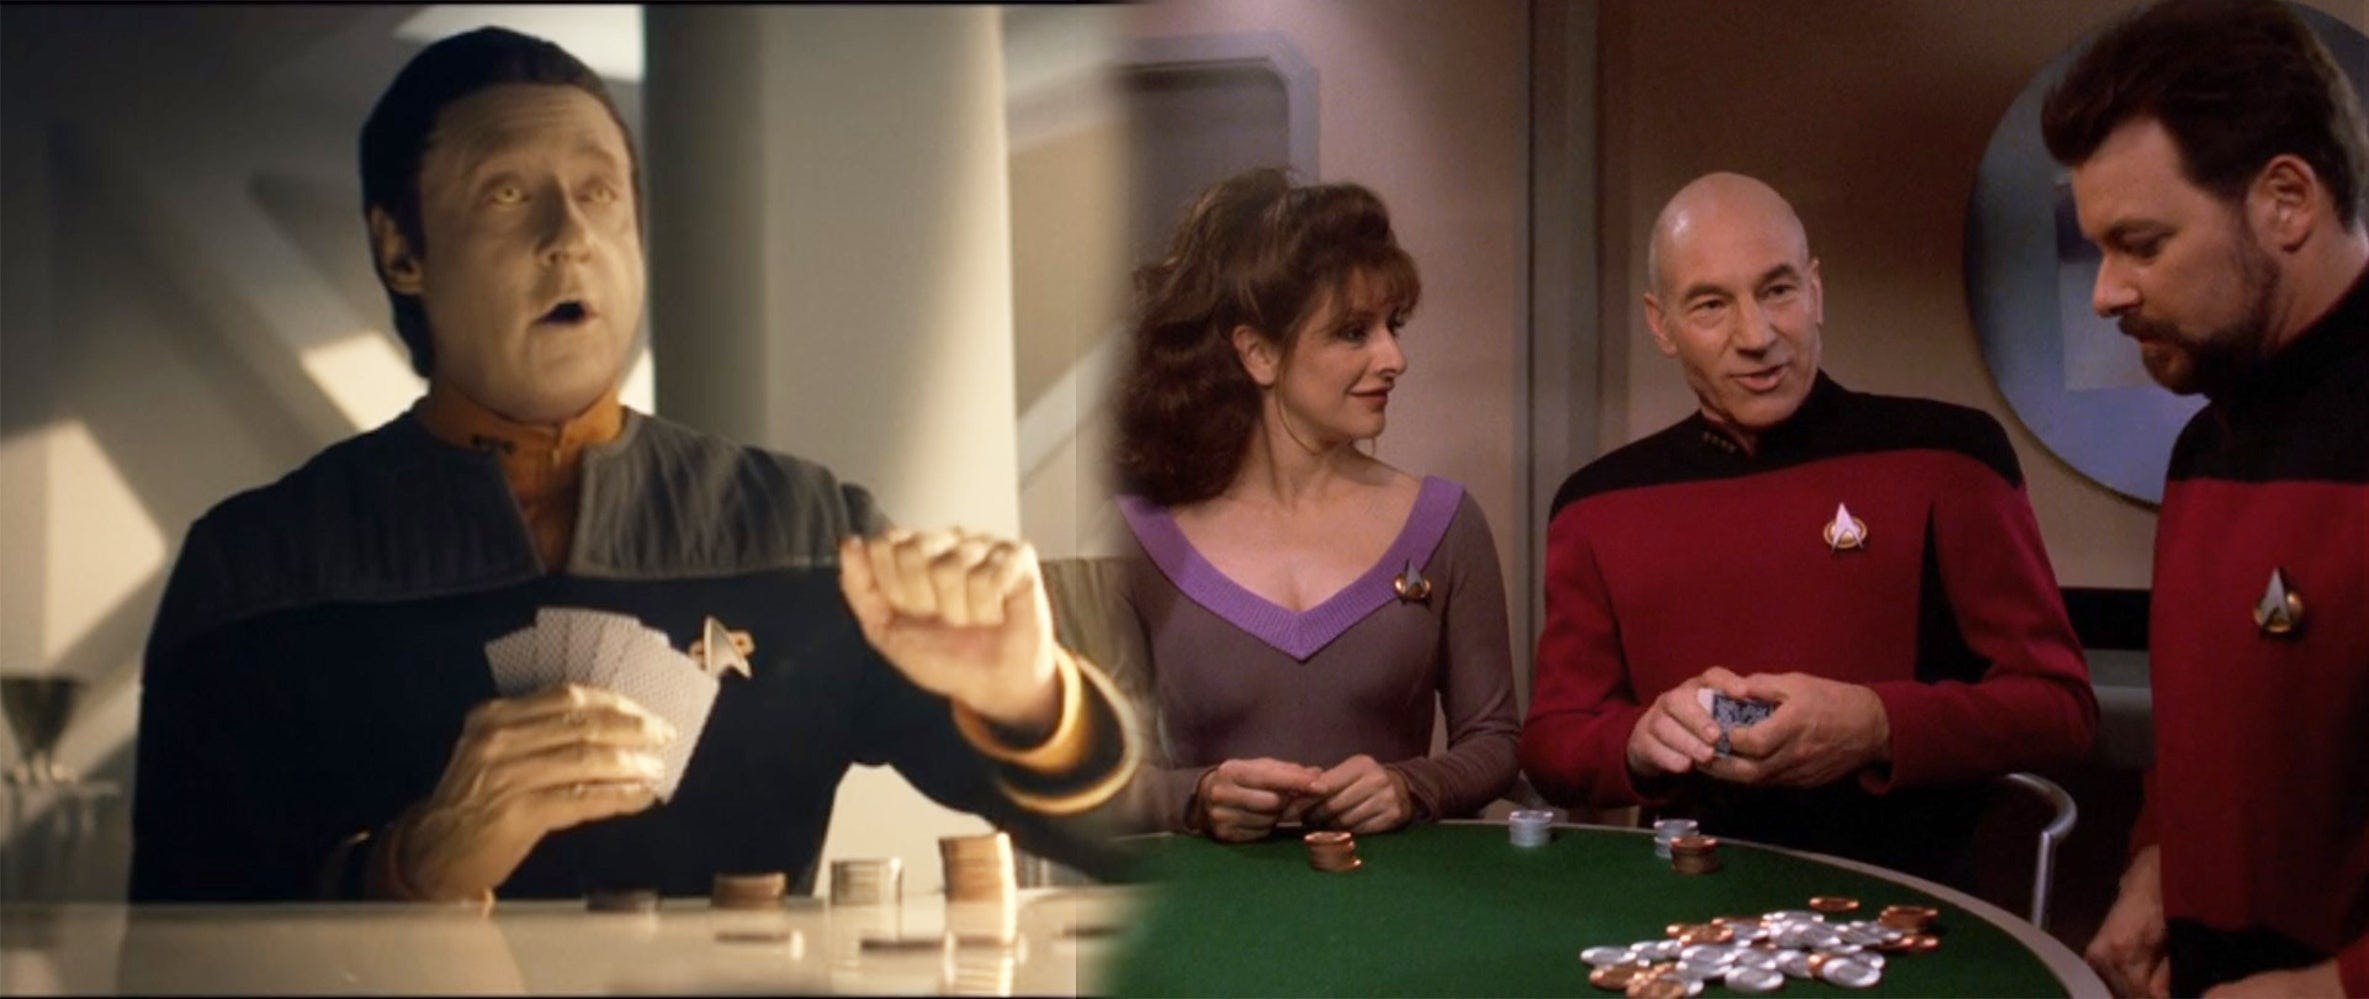 Poker Star Trek easter egg Picard The Next Generation